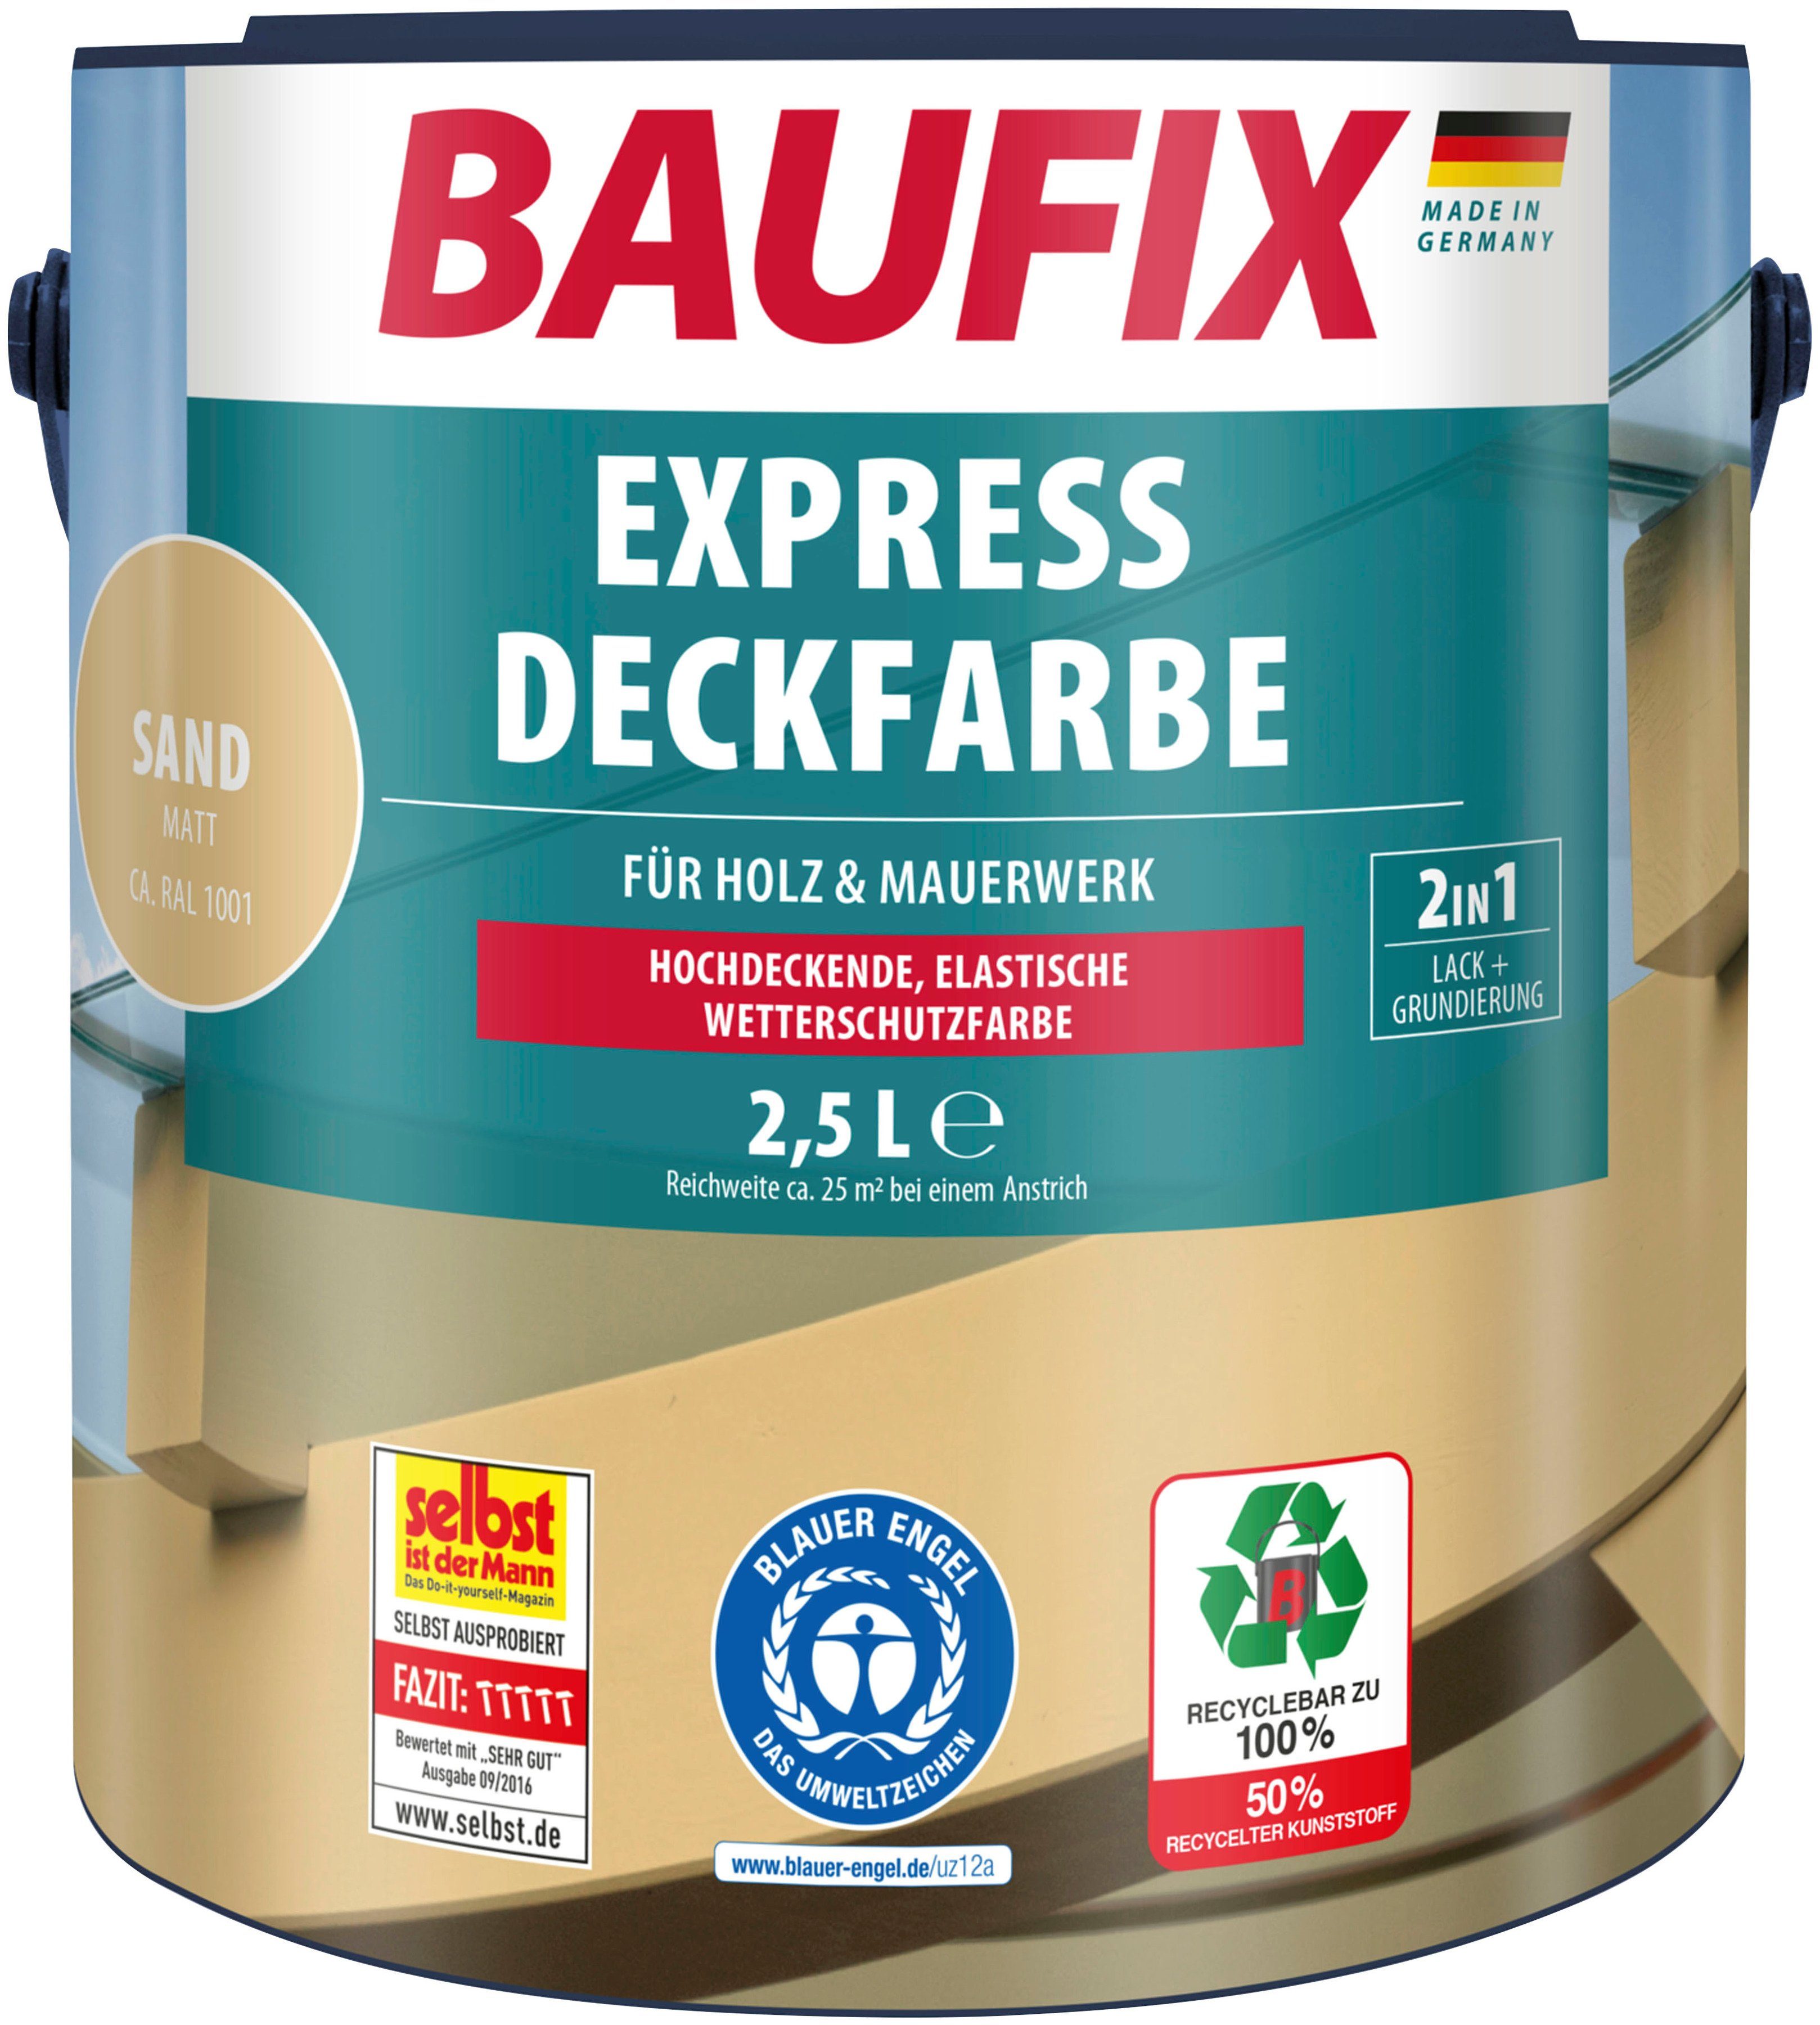 Baufix Wetterschutzfarbe Express Deckfarbe, erhöhte Witterungsbeständigkeit, elastisch, 2,5L, matt sand